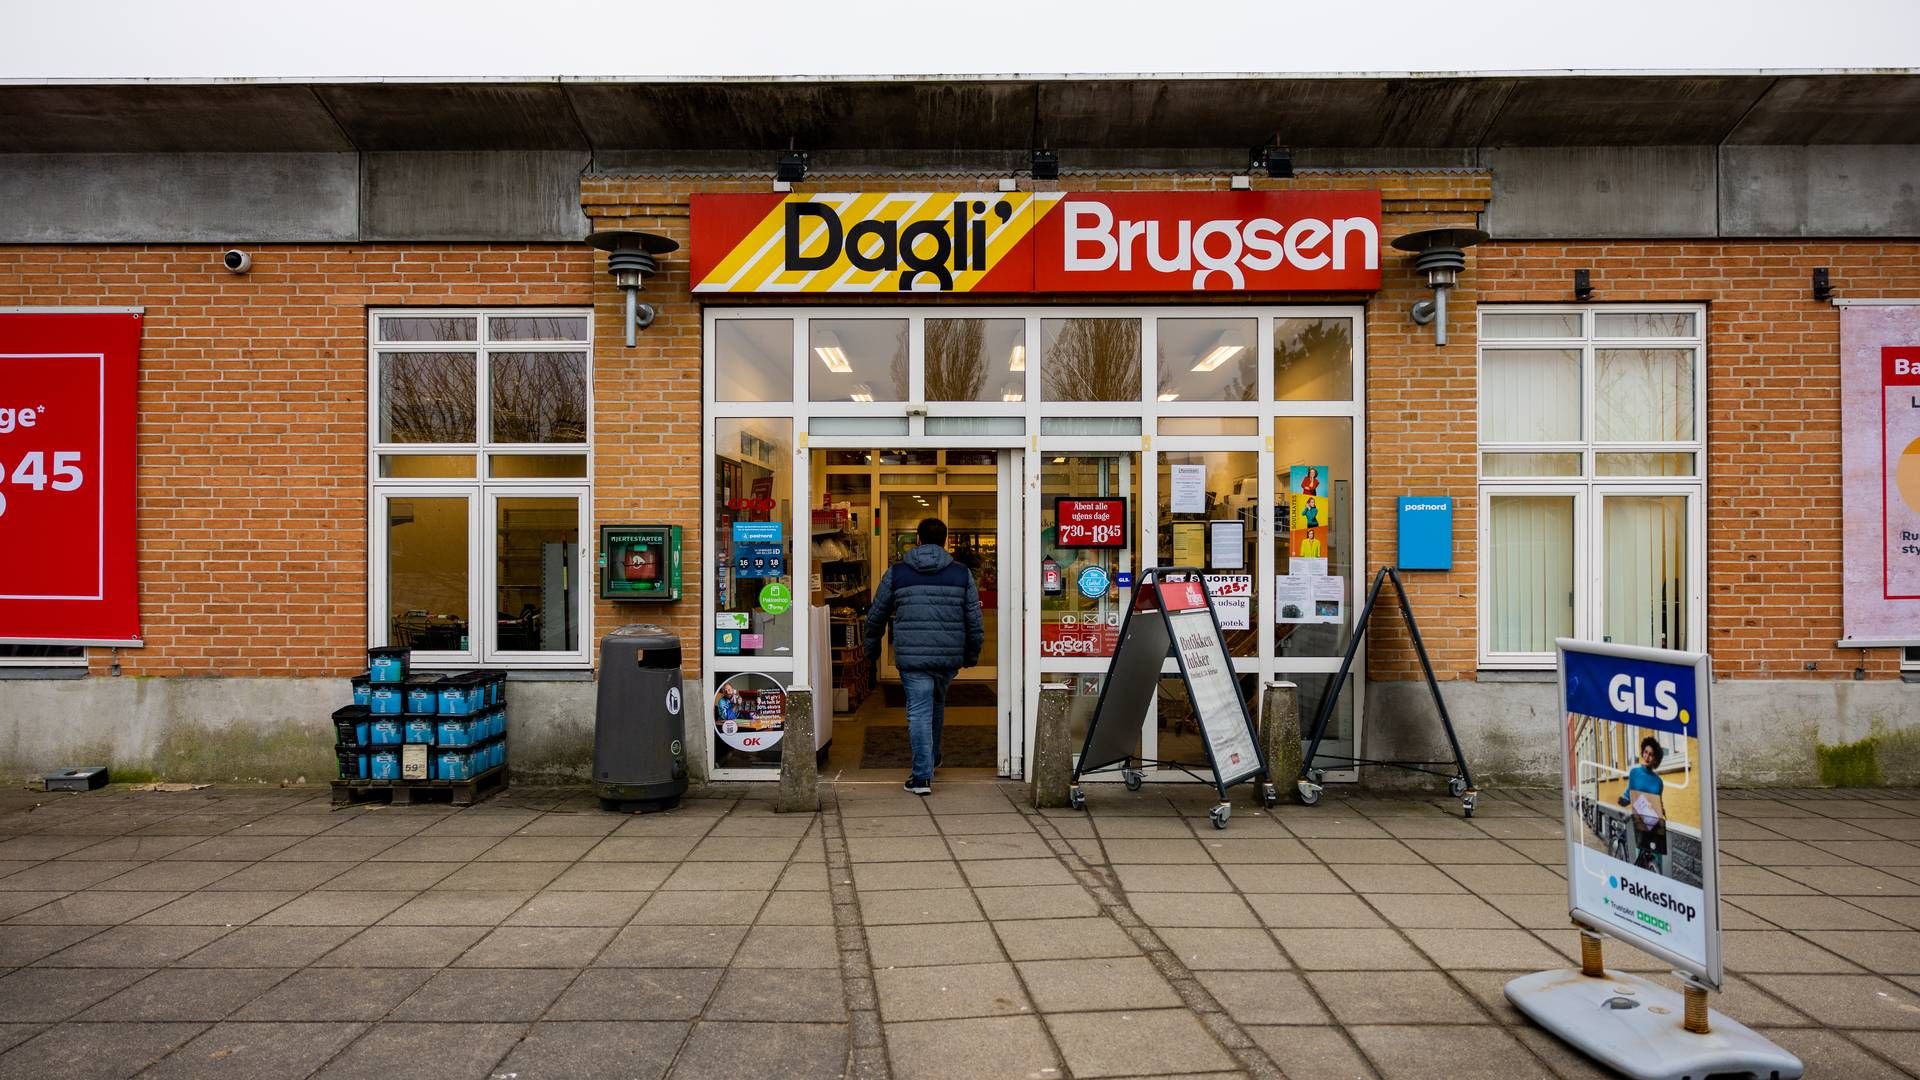 Over 50 selvstændige Dagli' Brugsen-brugsforeninger har sagt ja til at konvertere deres butikker til Brugsen. | Foto: Stine Schjøtler